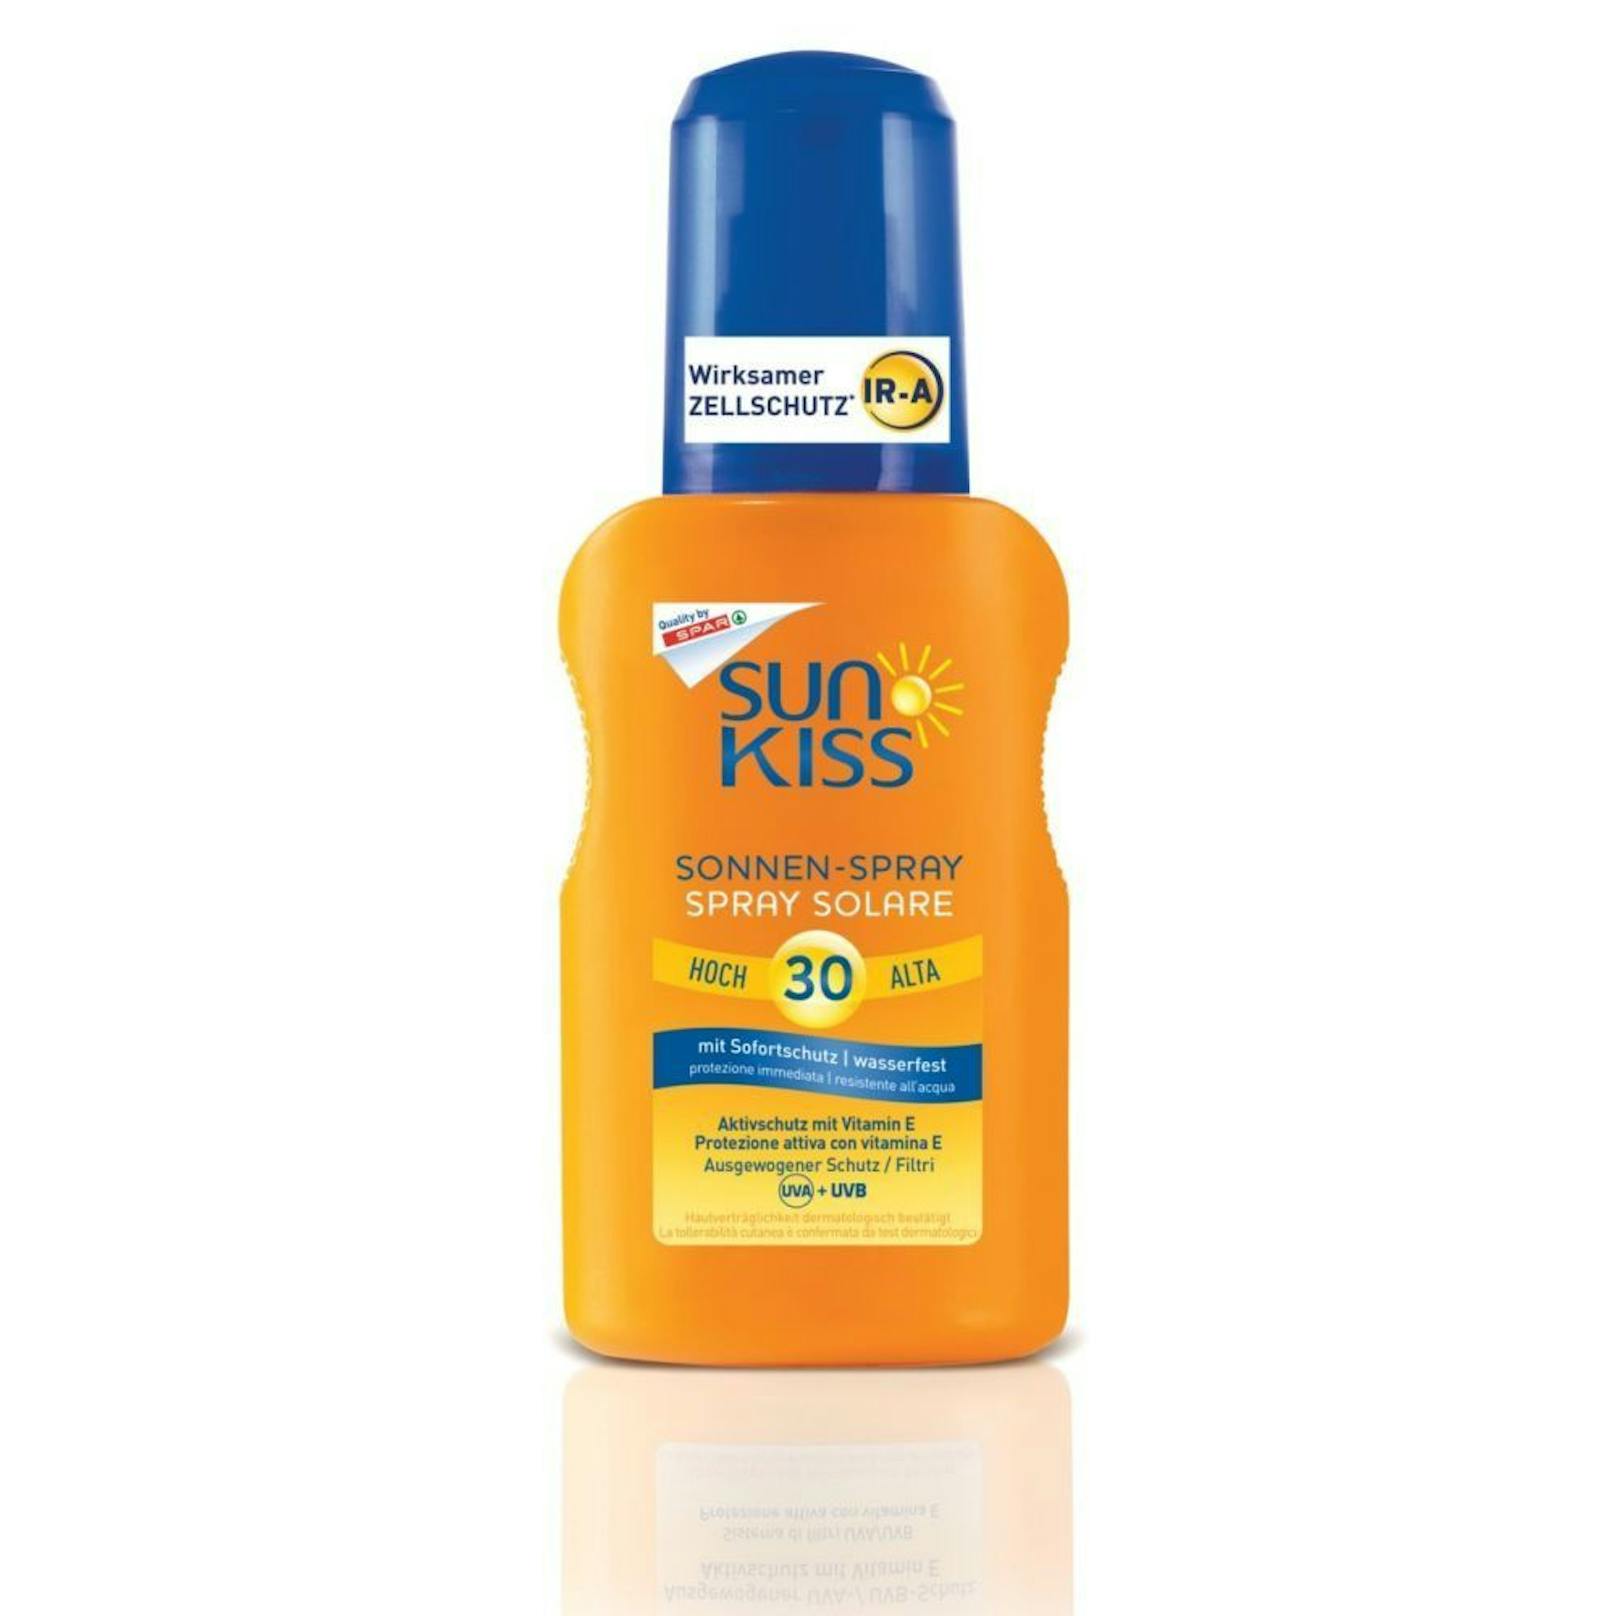 Sun Kiss Sensitiv Sonnen-Spray von Spar. 150ml um 7,79 Euro.